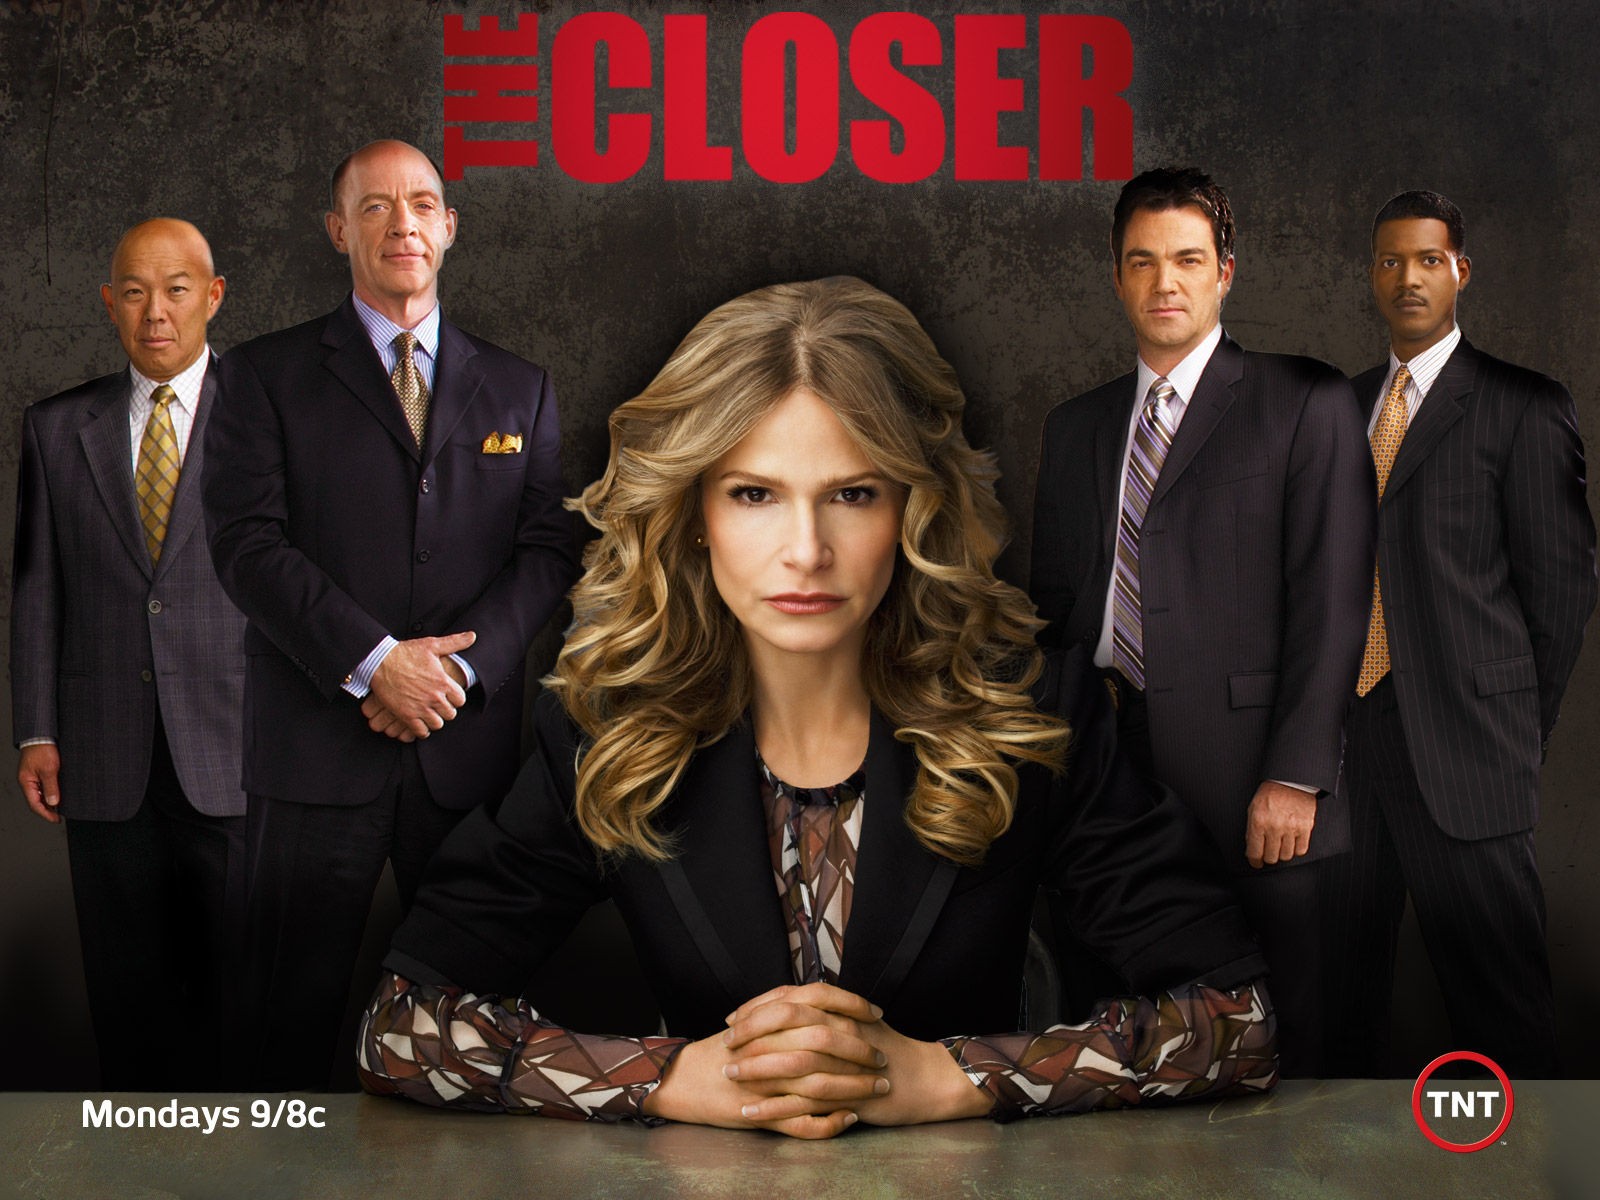 The Closer – Season 1 Episode 7